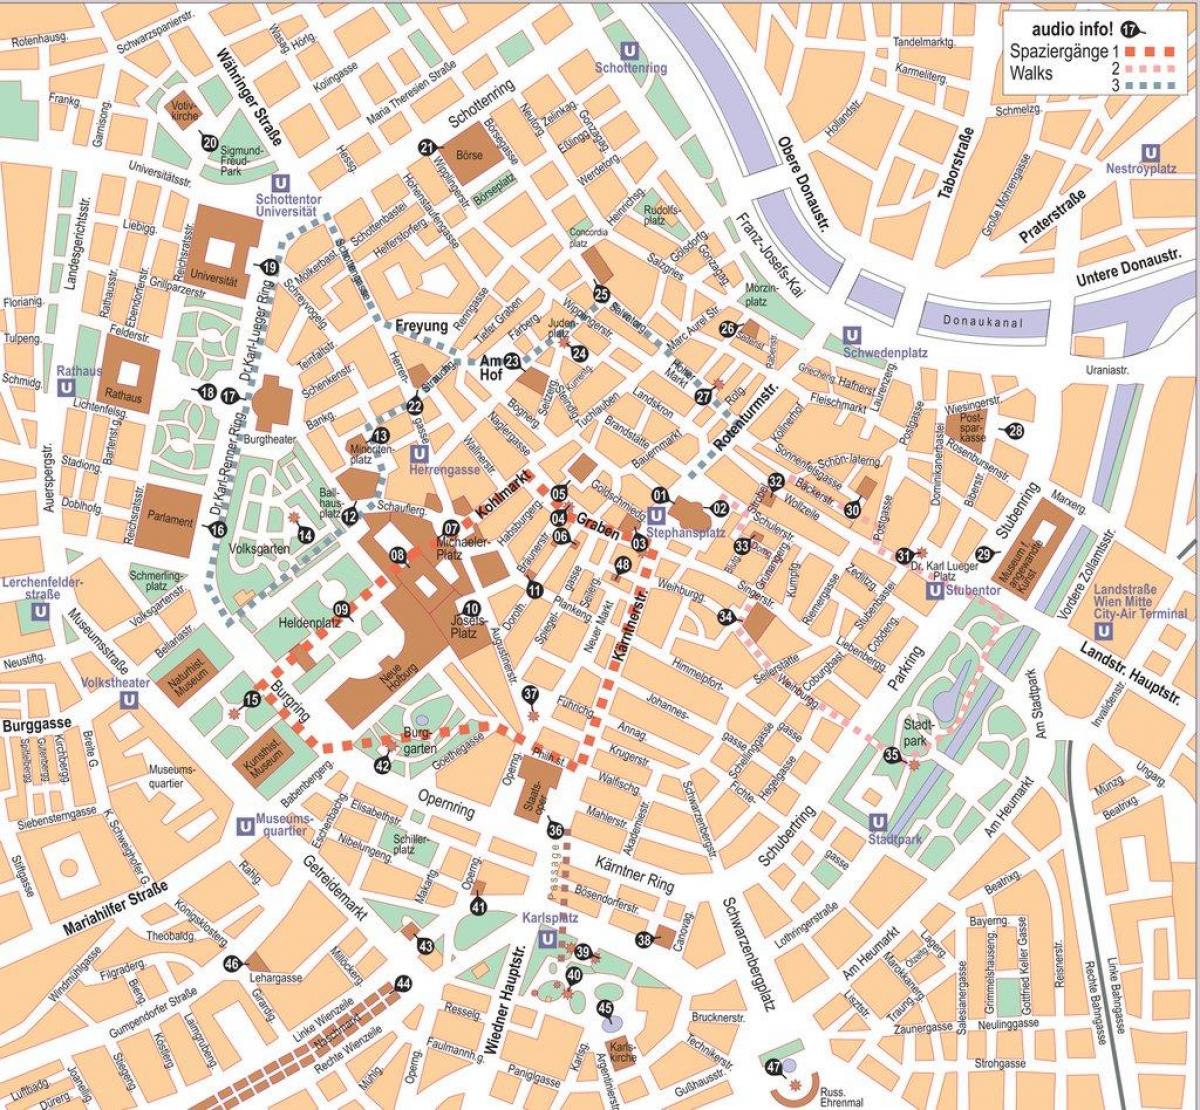 Mapa de Wien center